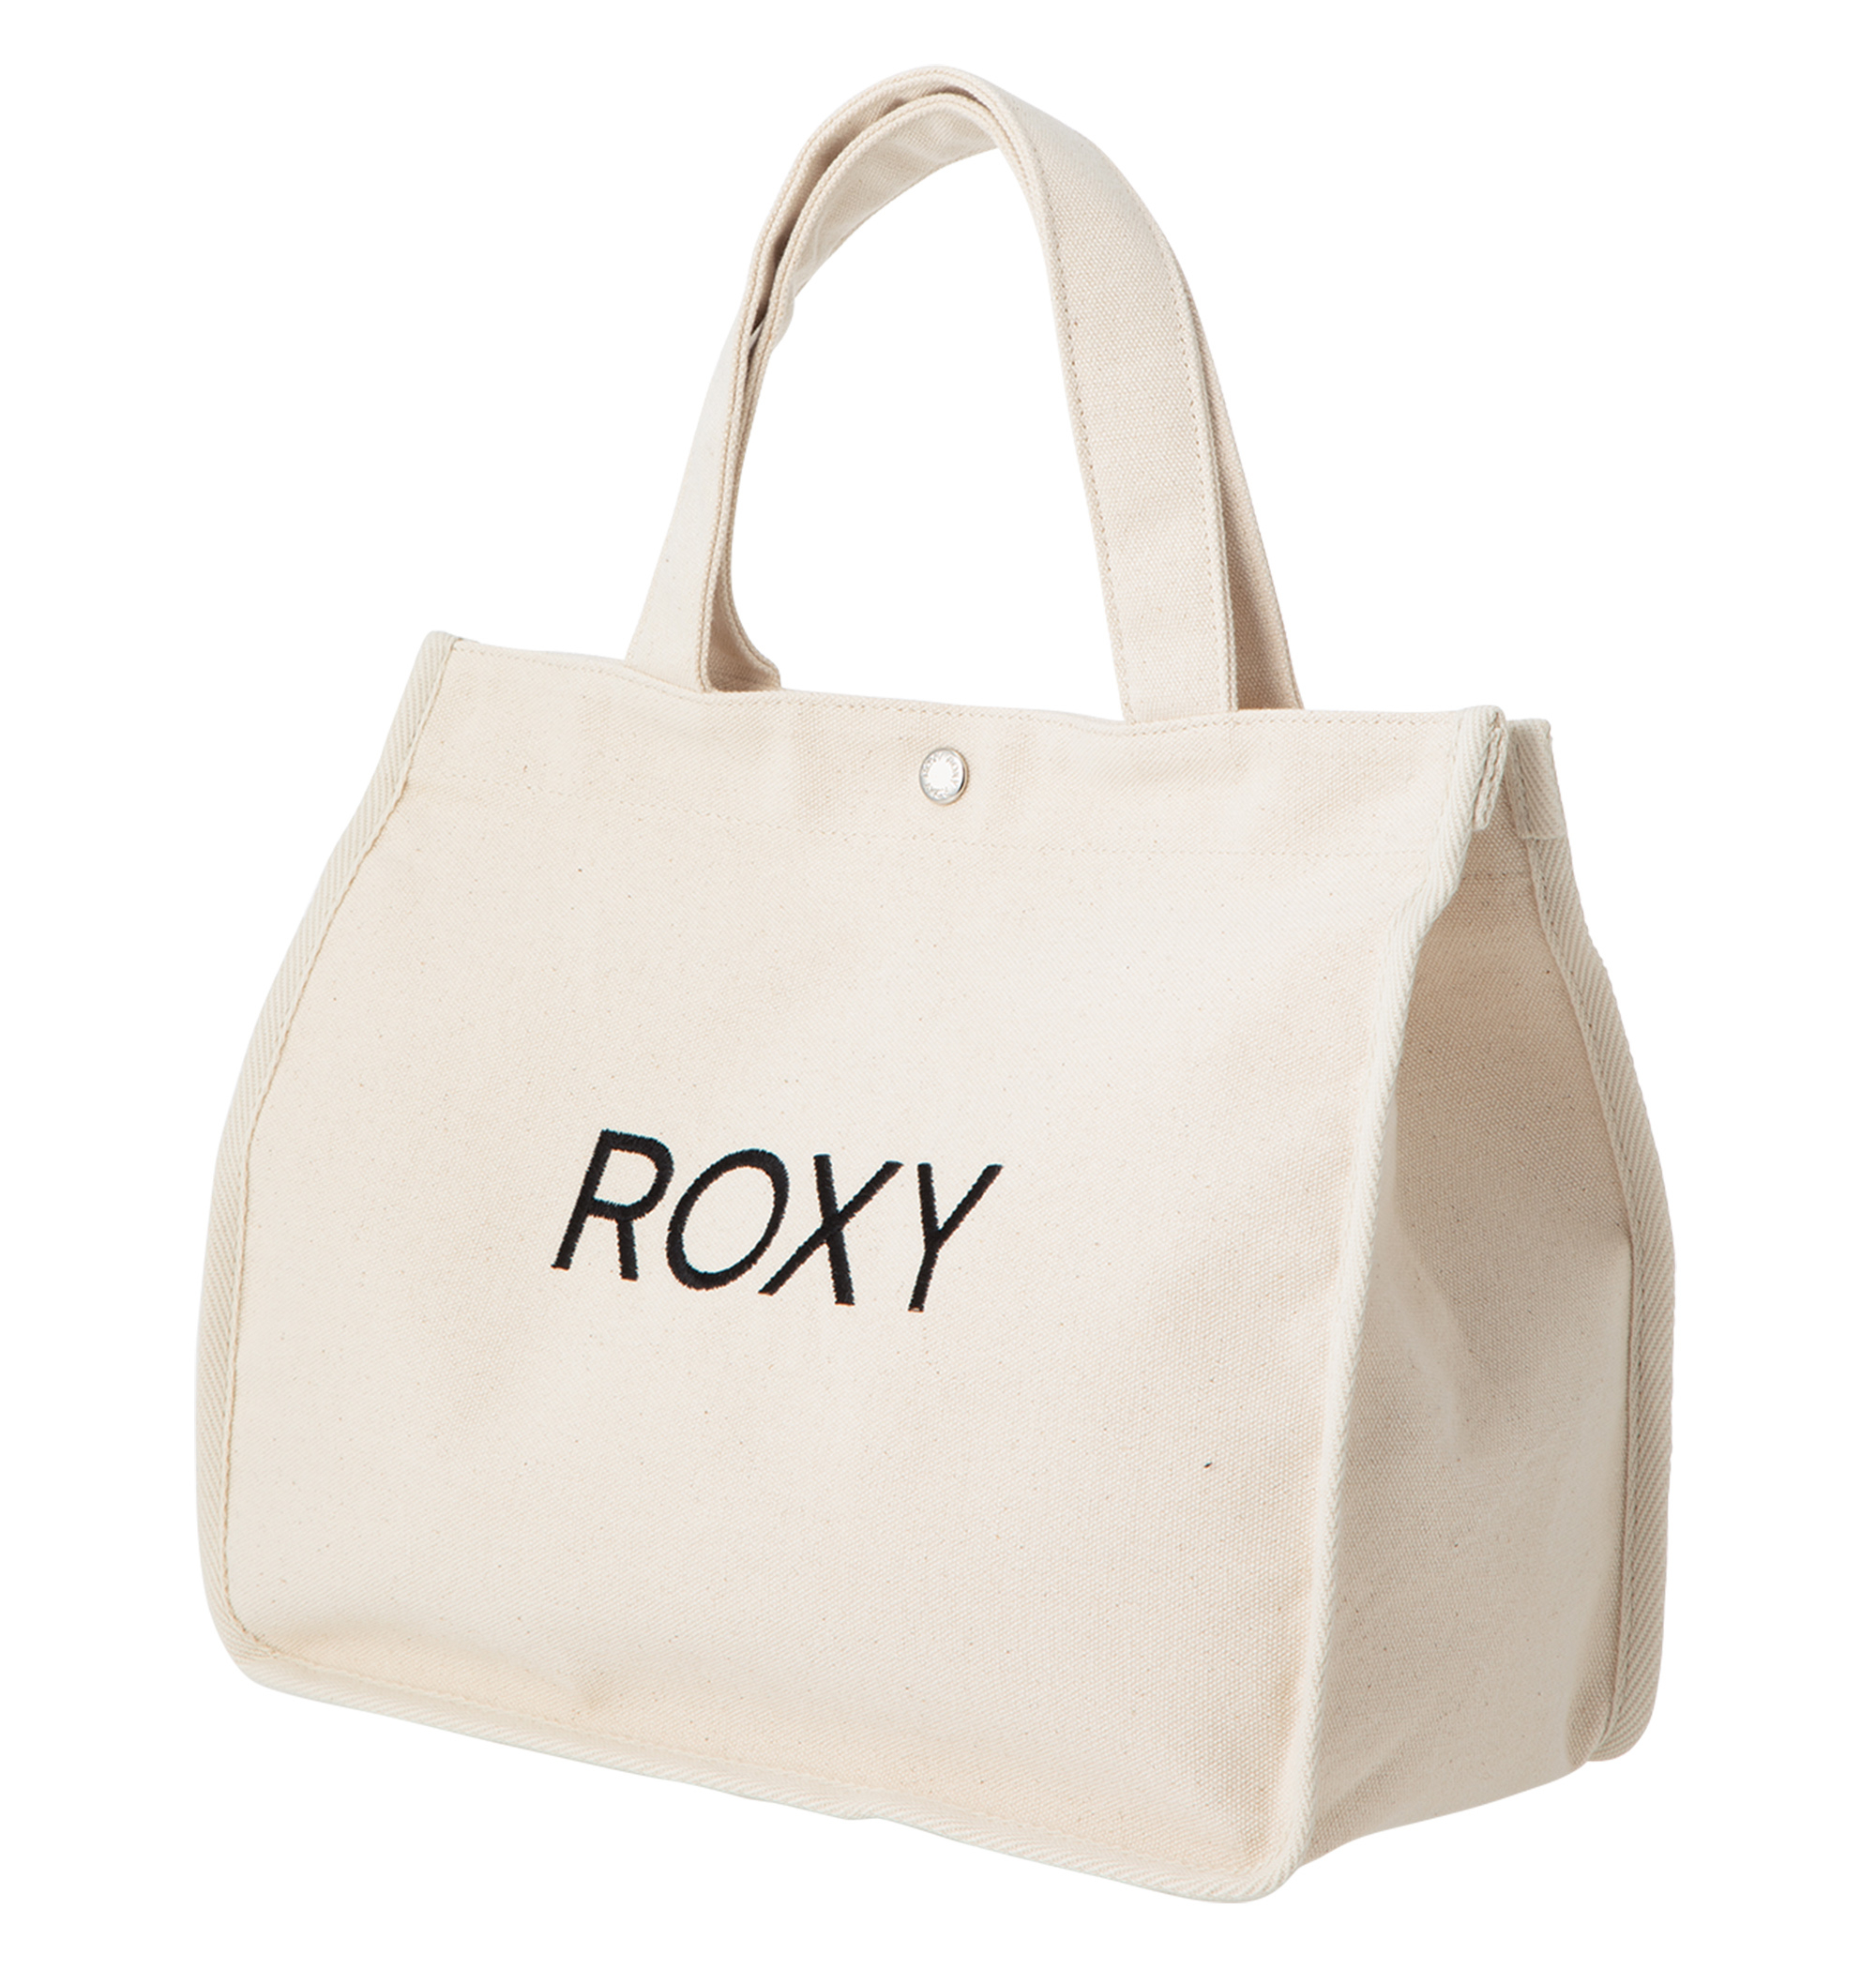 ＜Roxy＞UNDER CANVAS フロントのROXYロゴ刺繍がポイントのキャンパストートバッグ